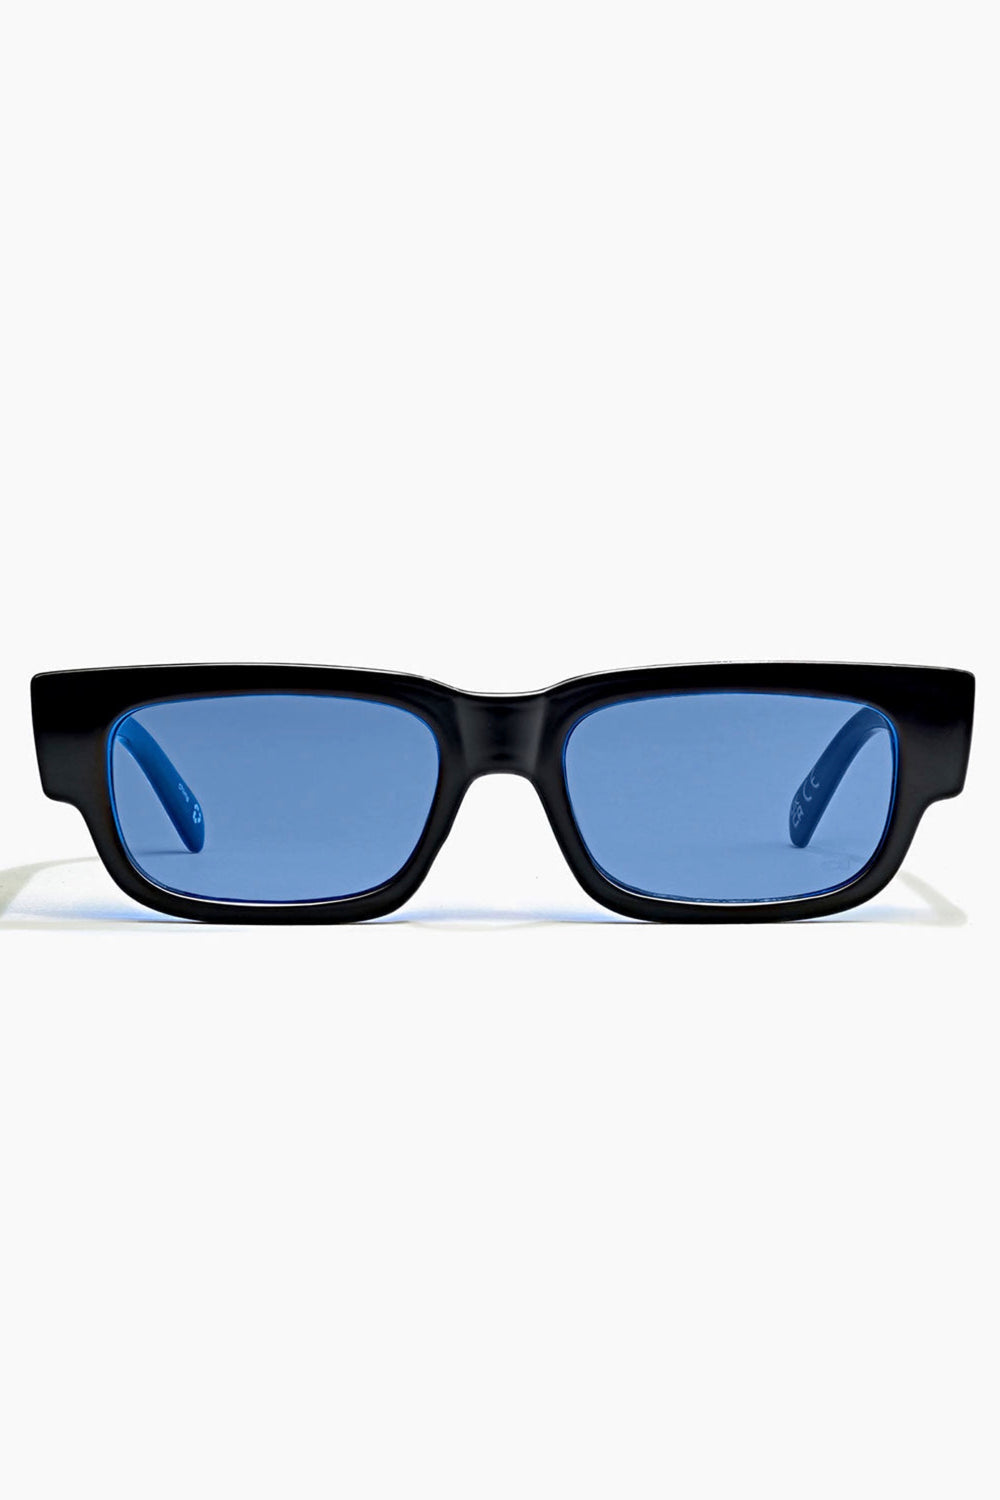 Elysium Porter Sunglasses